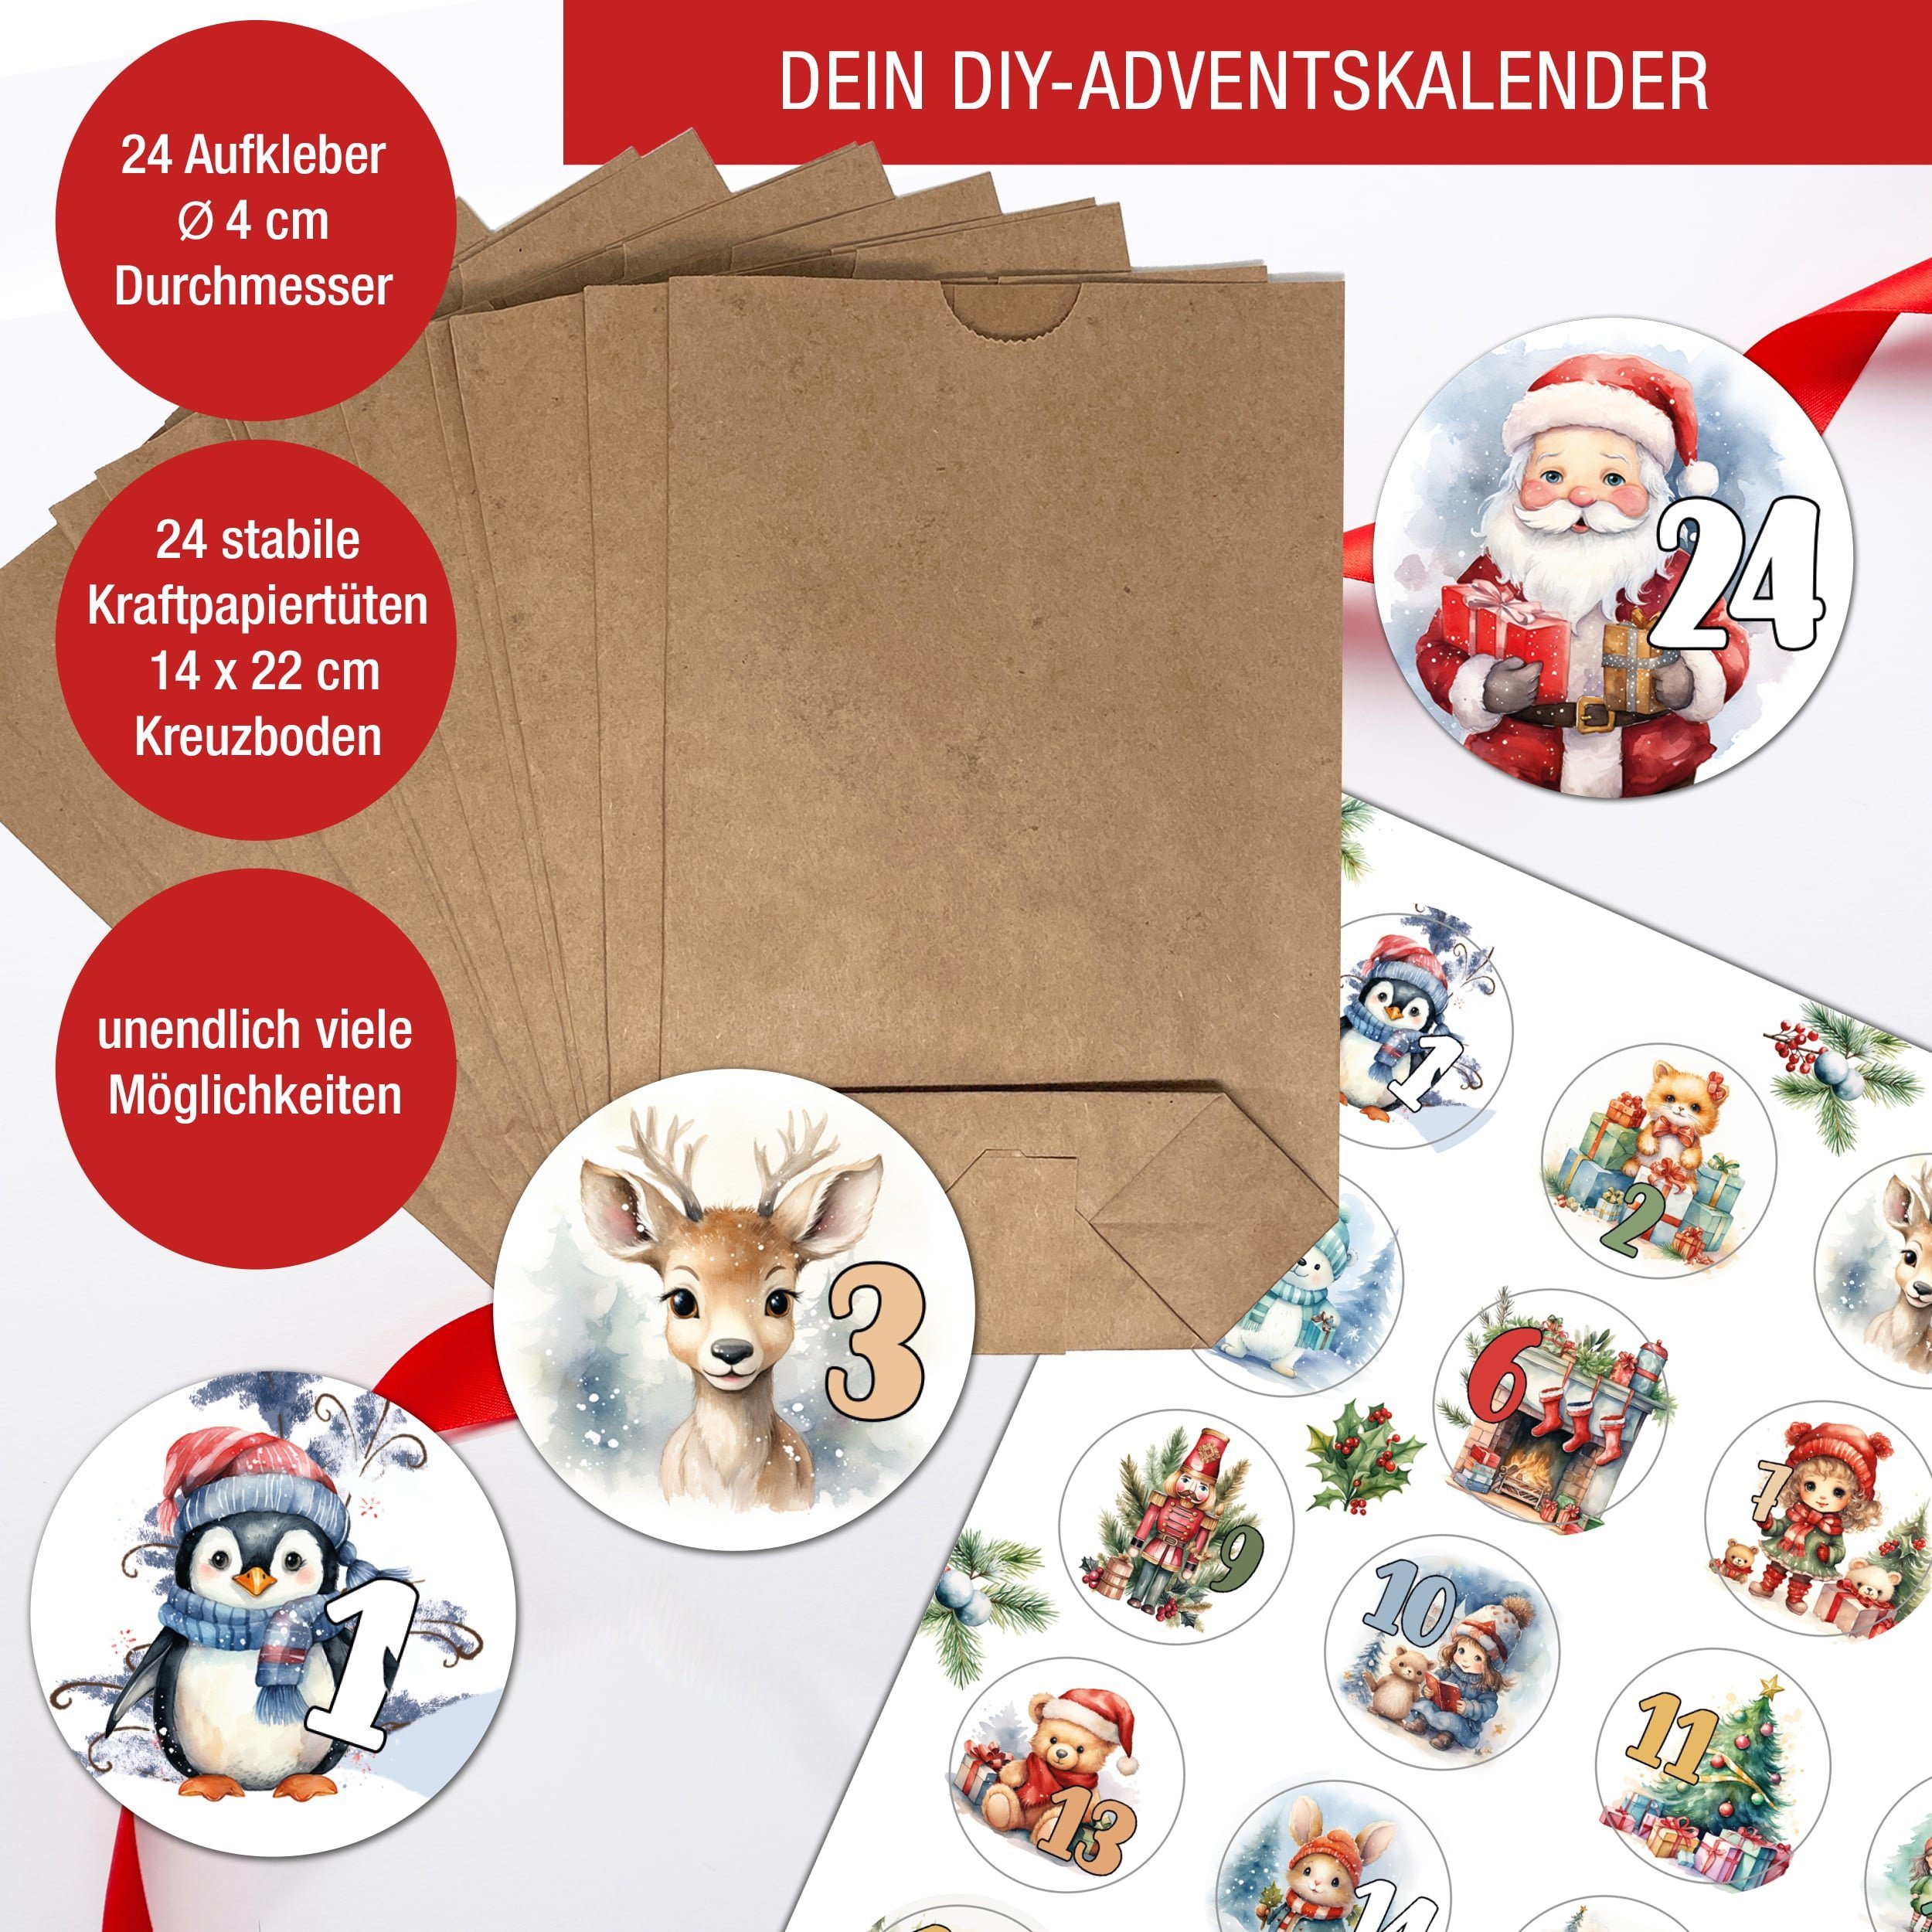 Aufkleber, basteln Adventskalender zum 24 Tüten Adventskalender Weihnachskalender + befüllen, TOBJA DIY Kartpapier